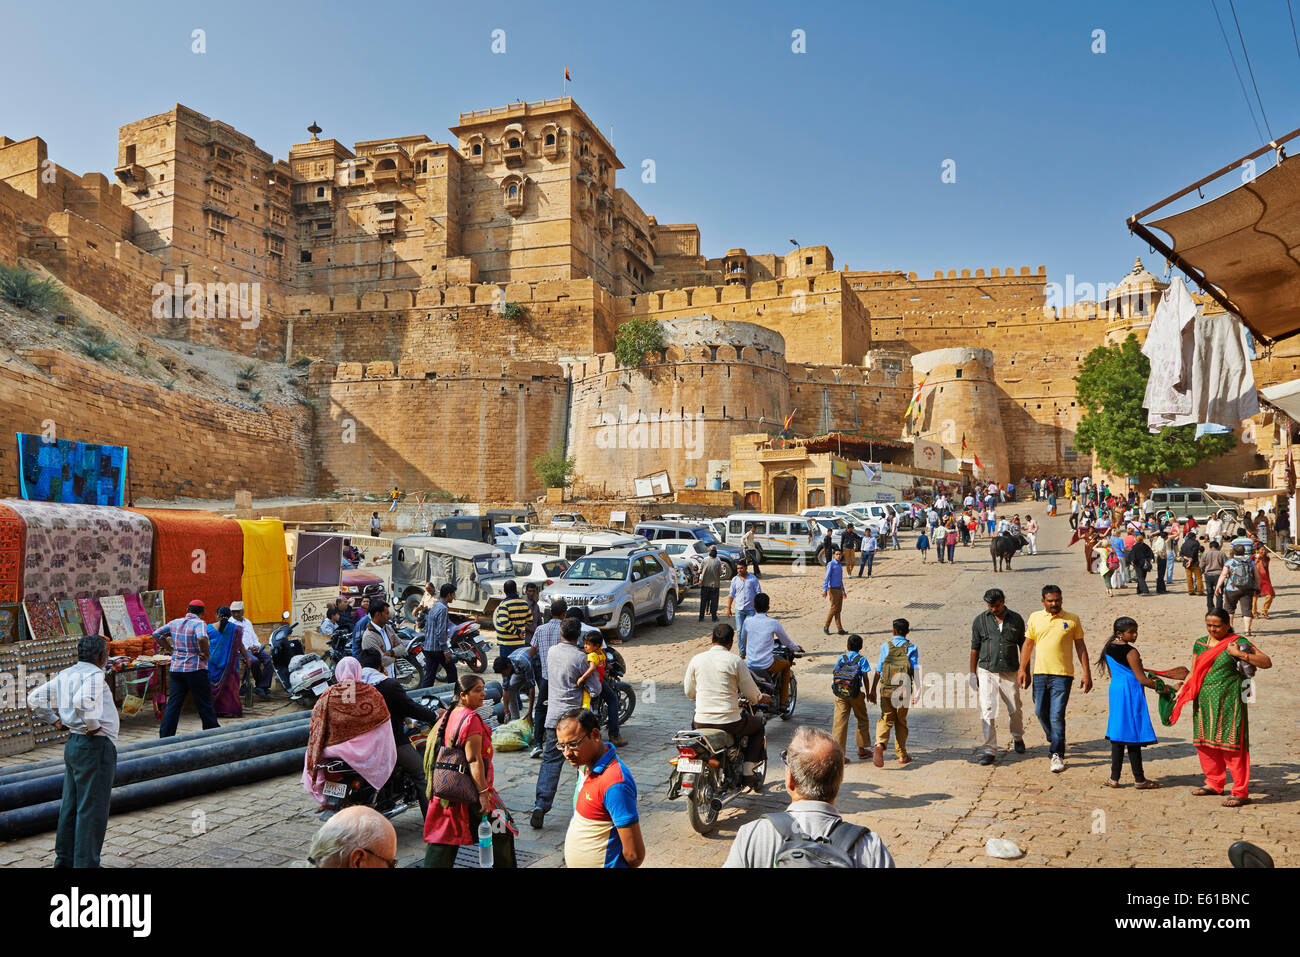 La muralla de la ciudad de Jaisalmer, vagabundos en frente, Rajasthan, India Foto de stock